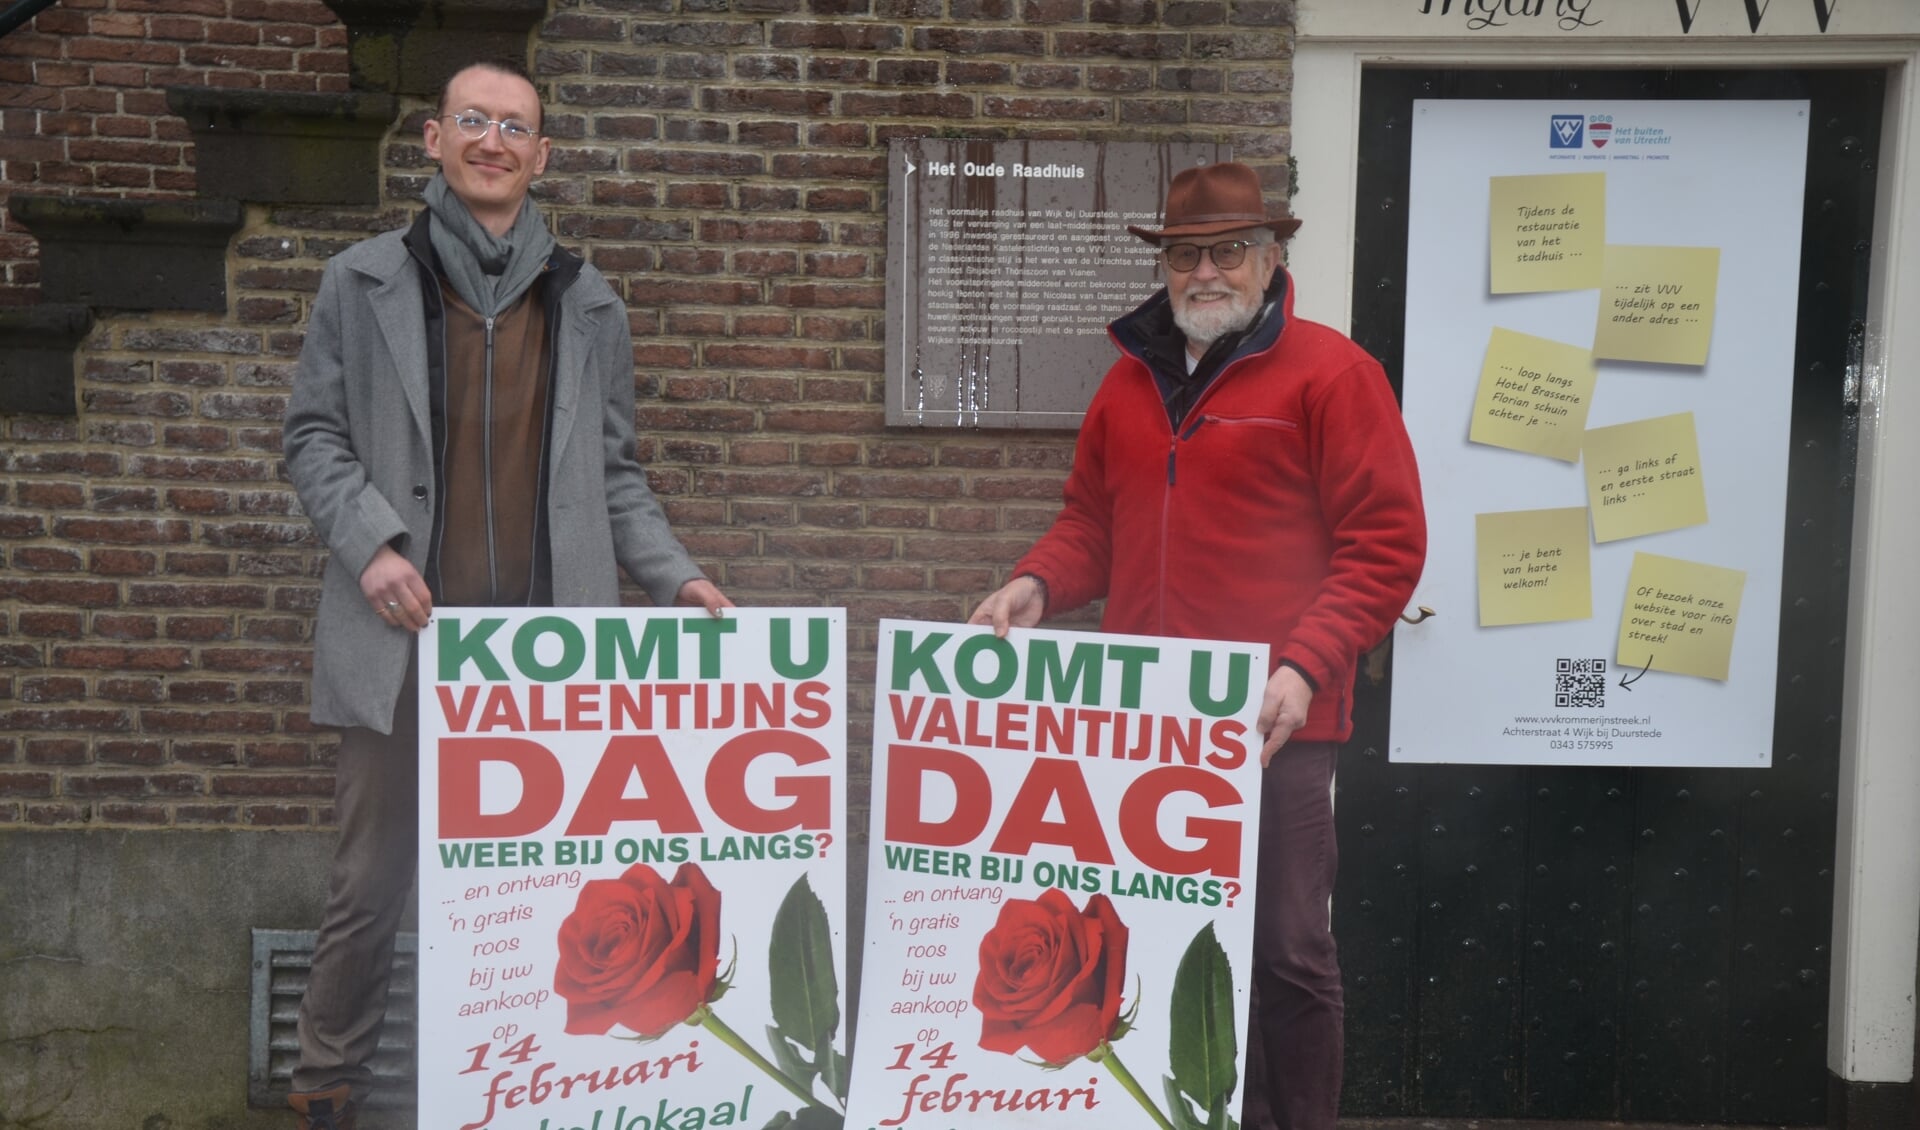 Yves Coster en Pieter van der Sleen over de Valentijnsactie